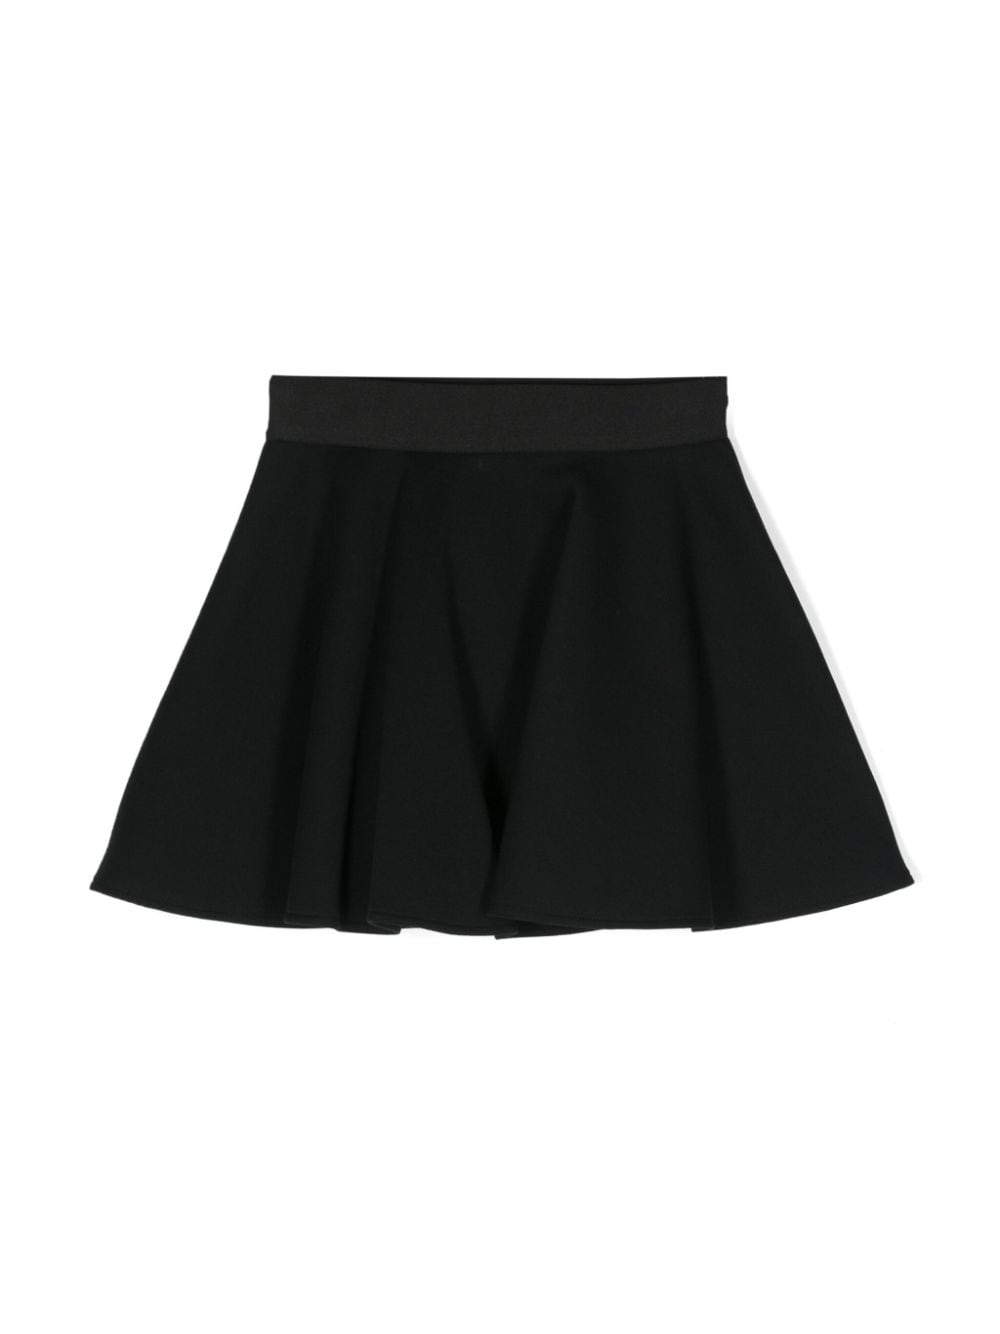 Black cotton skirt for girls